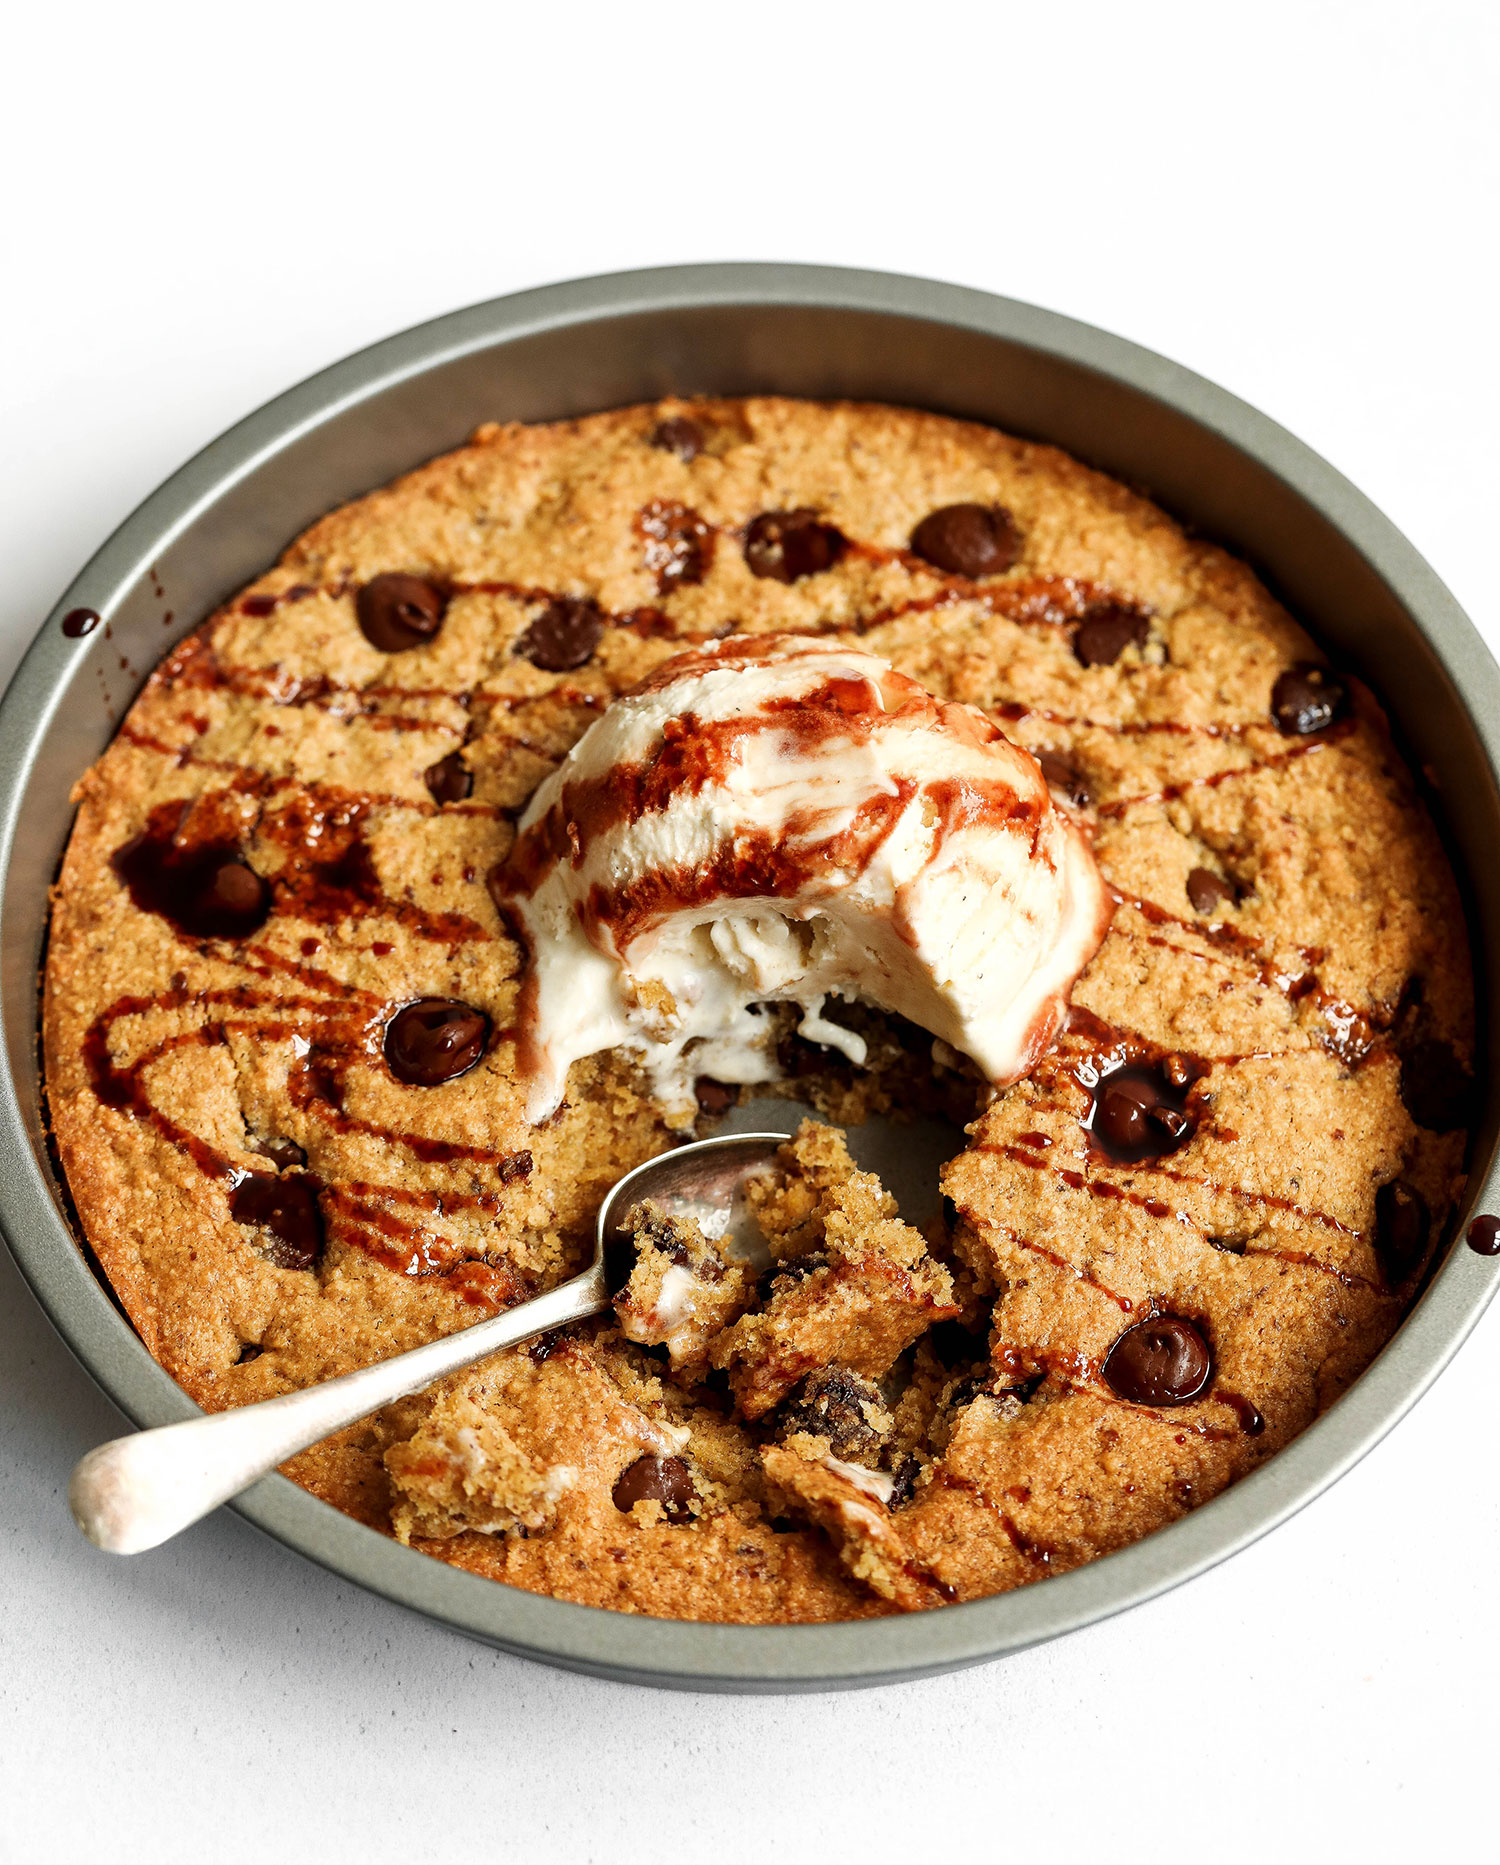 Vegan Chocolate Chip Cookie Skillet (gluten free) • Fit Mitten Kitchen